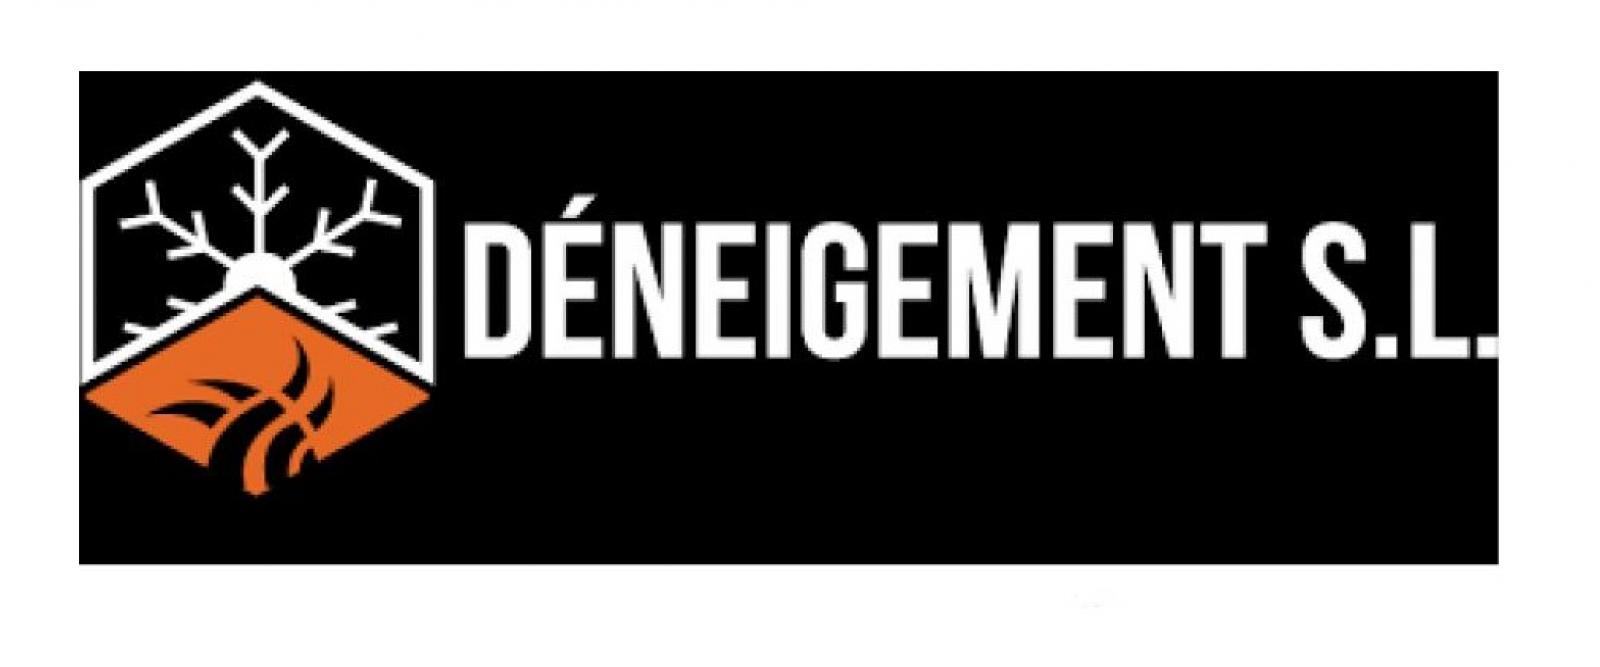 Aménagement paysager, Les Entreprises de Déneigement S.L. à Québec. Logo